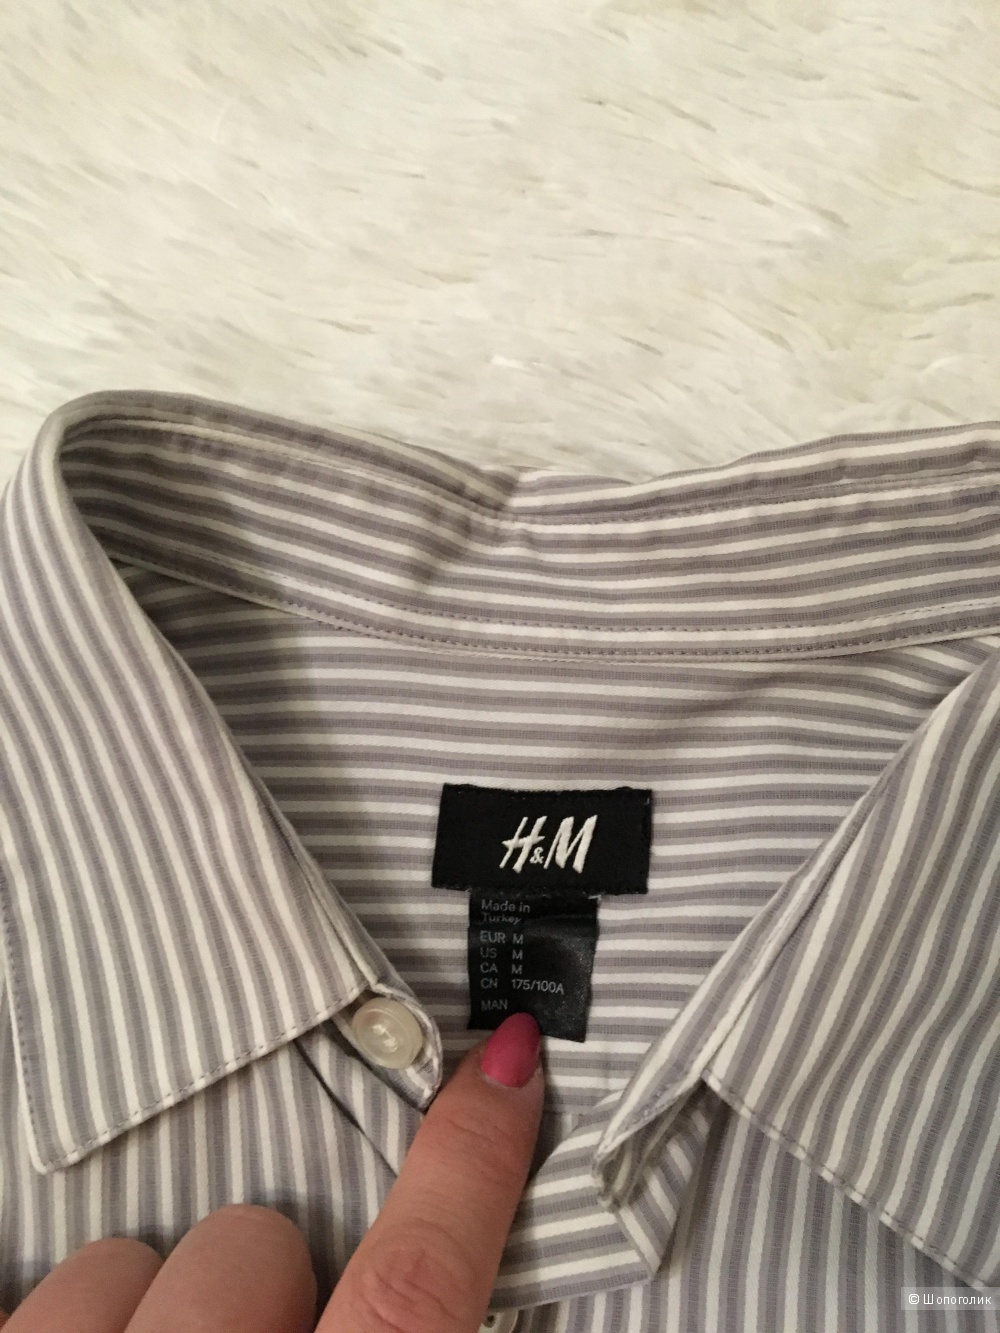 Сет из мужских рубашек Esprit, размер М+DND, размер М+ H&M, размер М